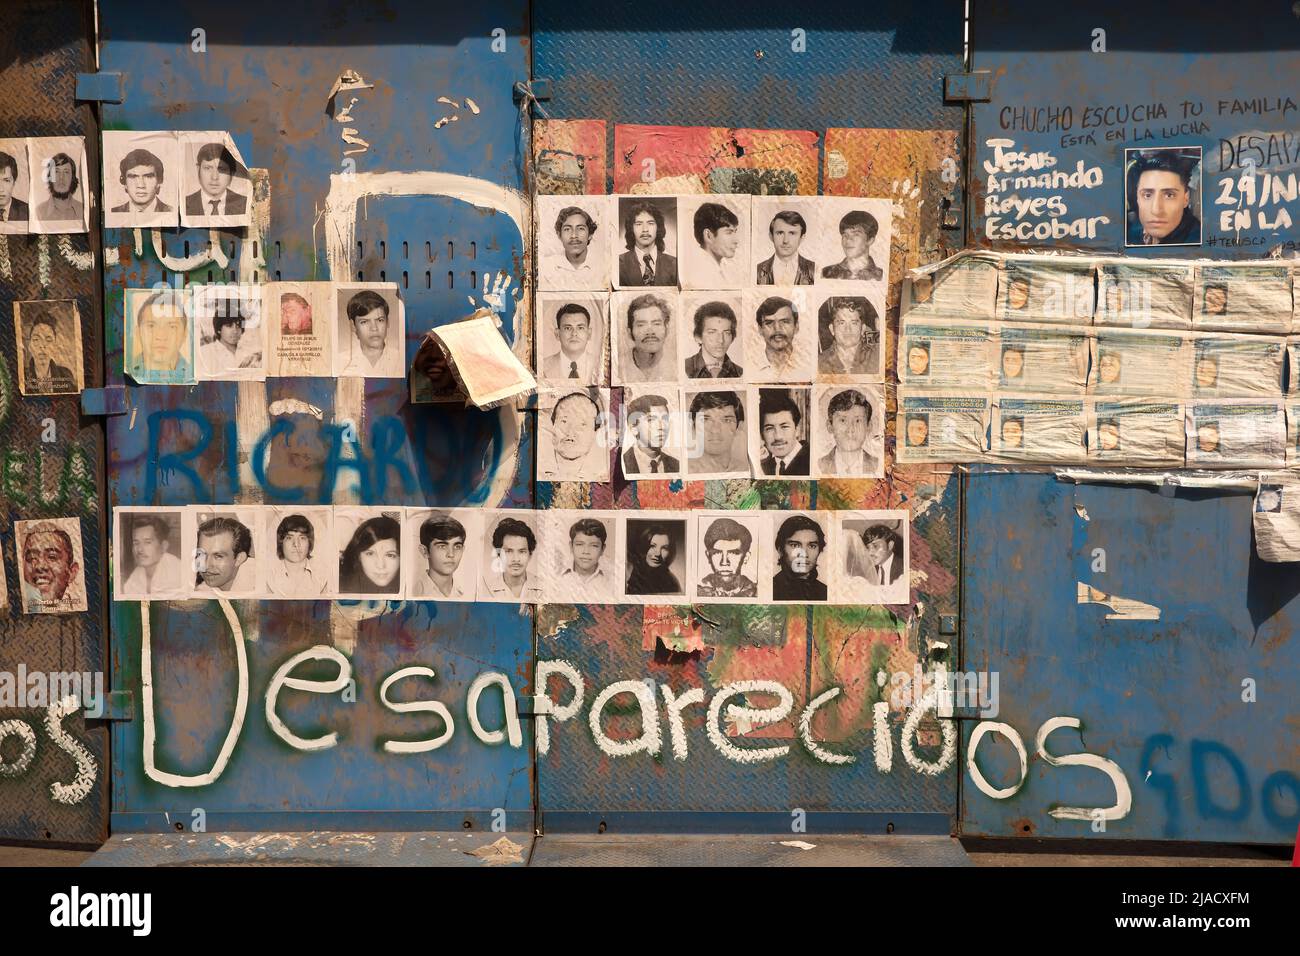 Immagini di persone scomparse postate sul muro commemorativo improvvisato per i scomparsi a Città del Messico, Messico Foto Stock